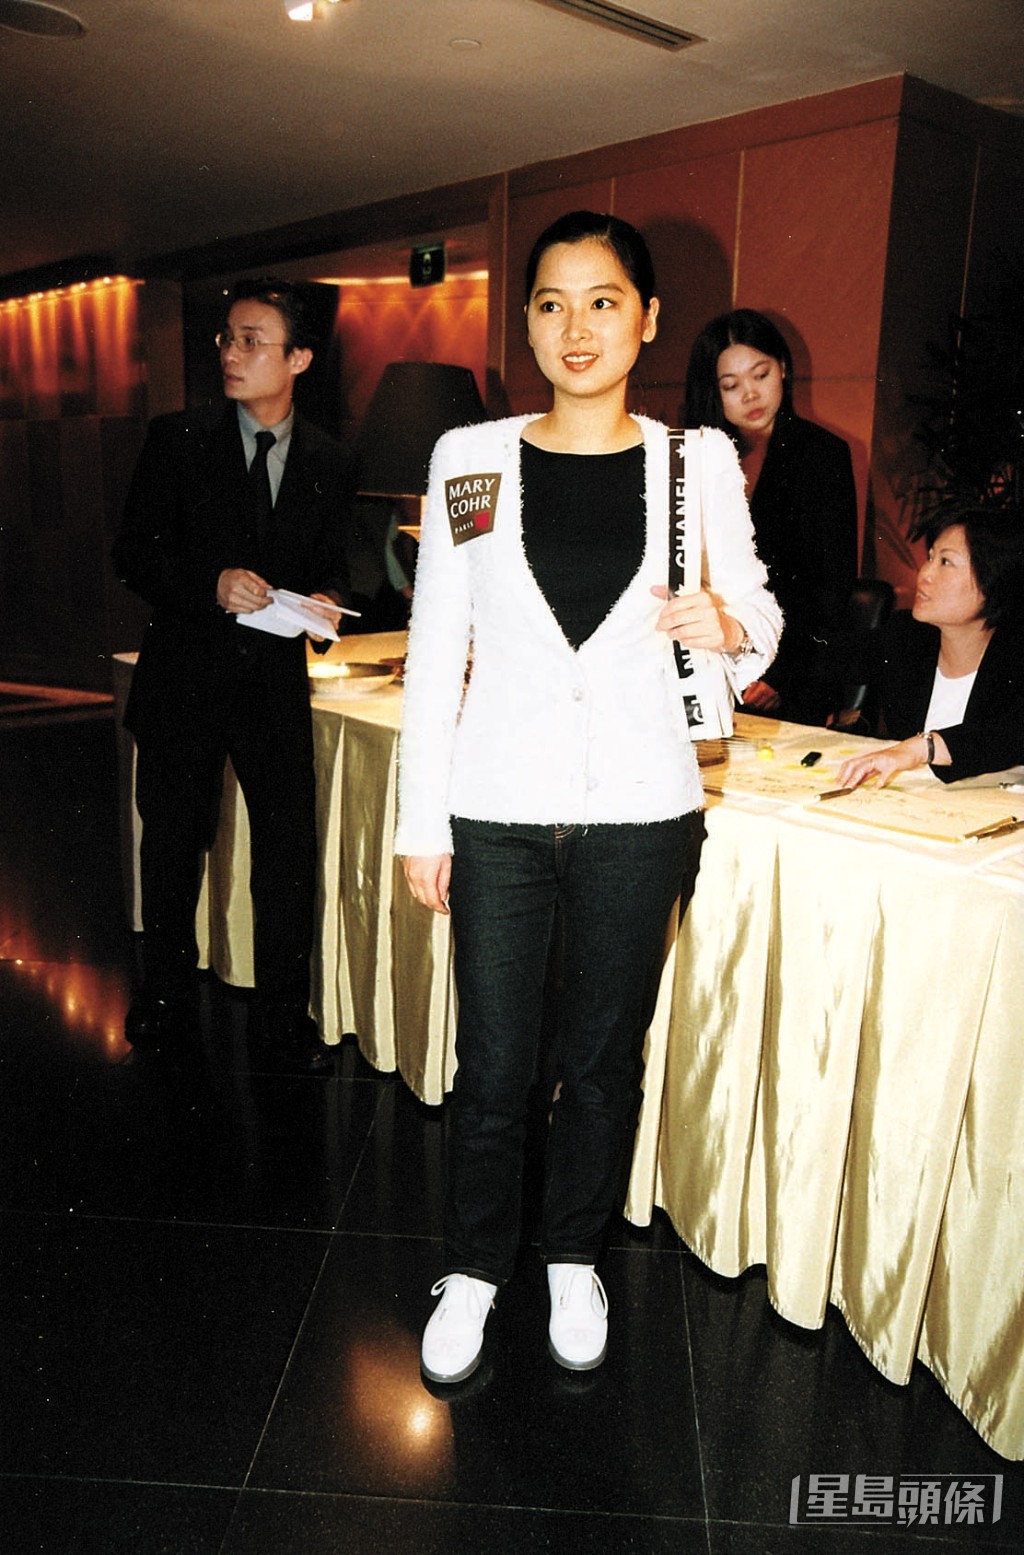 陳家碧入行後曾獲TVB安排拍攝劇集，包括《花月佳期》、《俠客行》、《蓋世豪俠》及《我本善良》等。